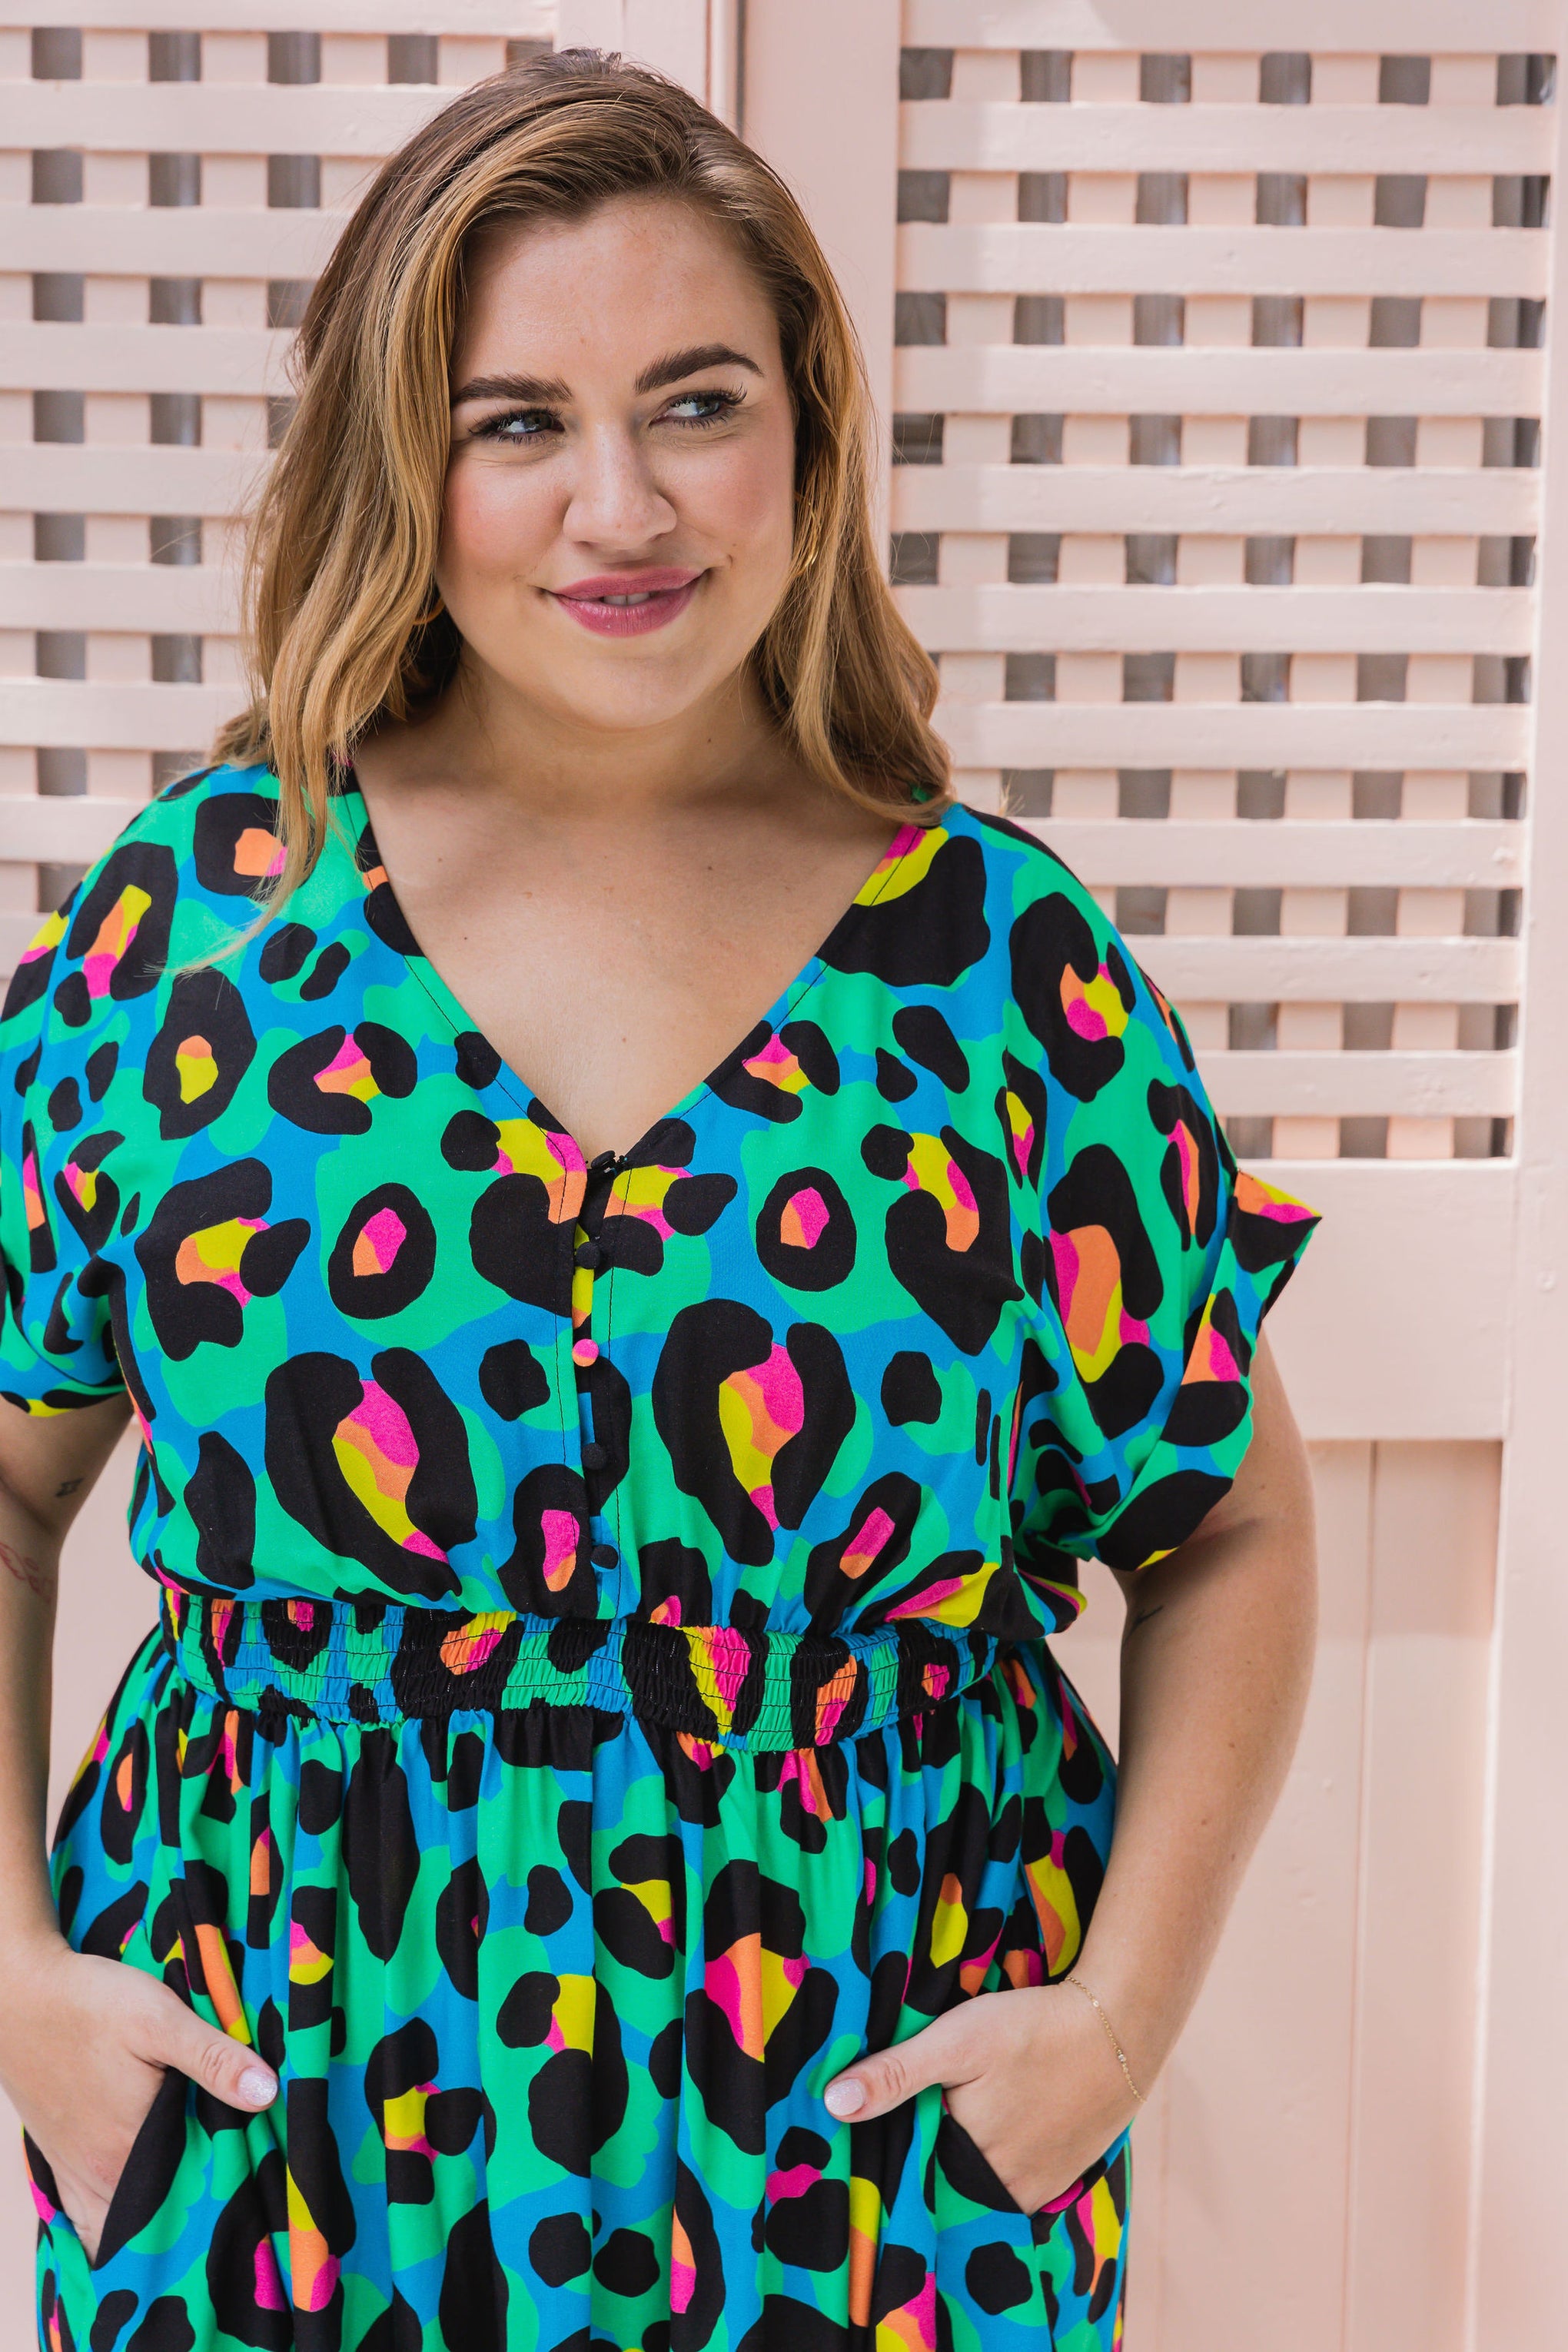 Millie Dress in Neon Leopard by Kasey Rainbow